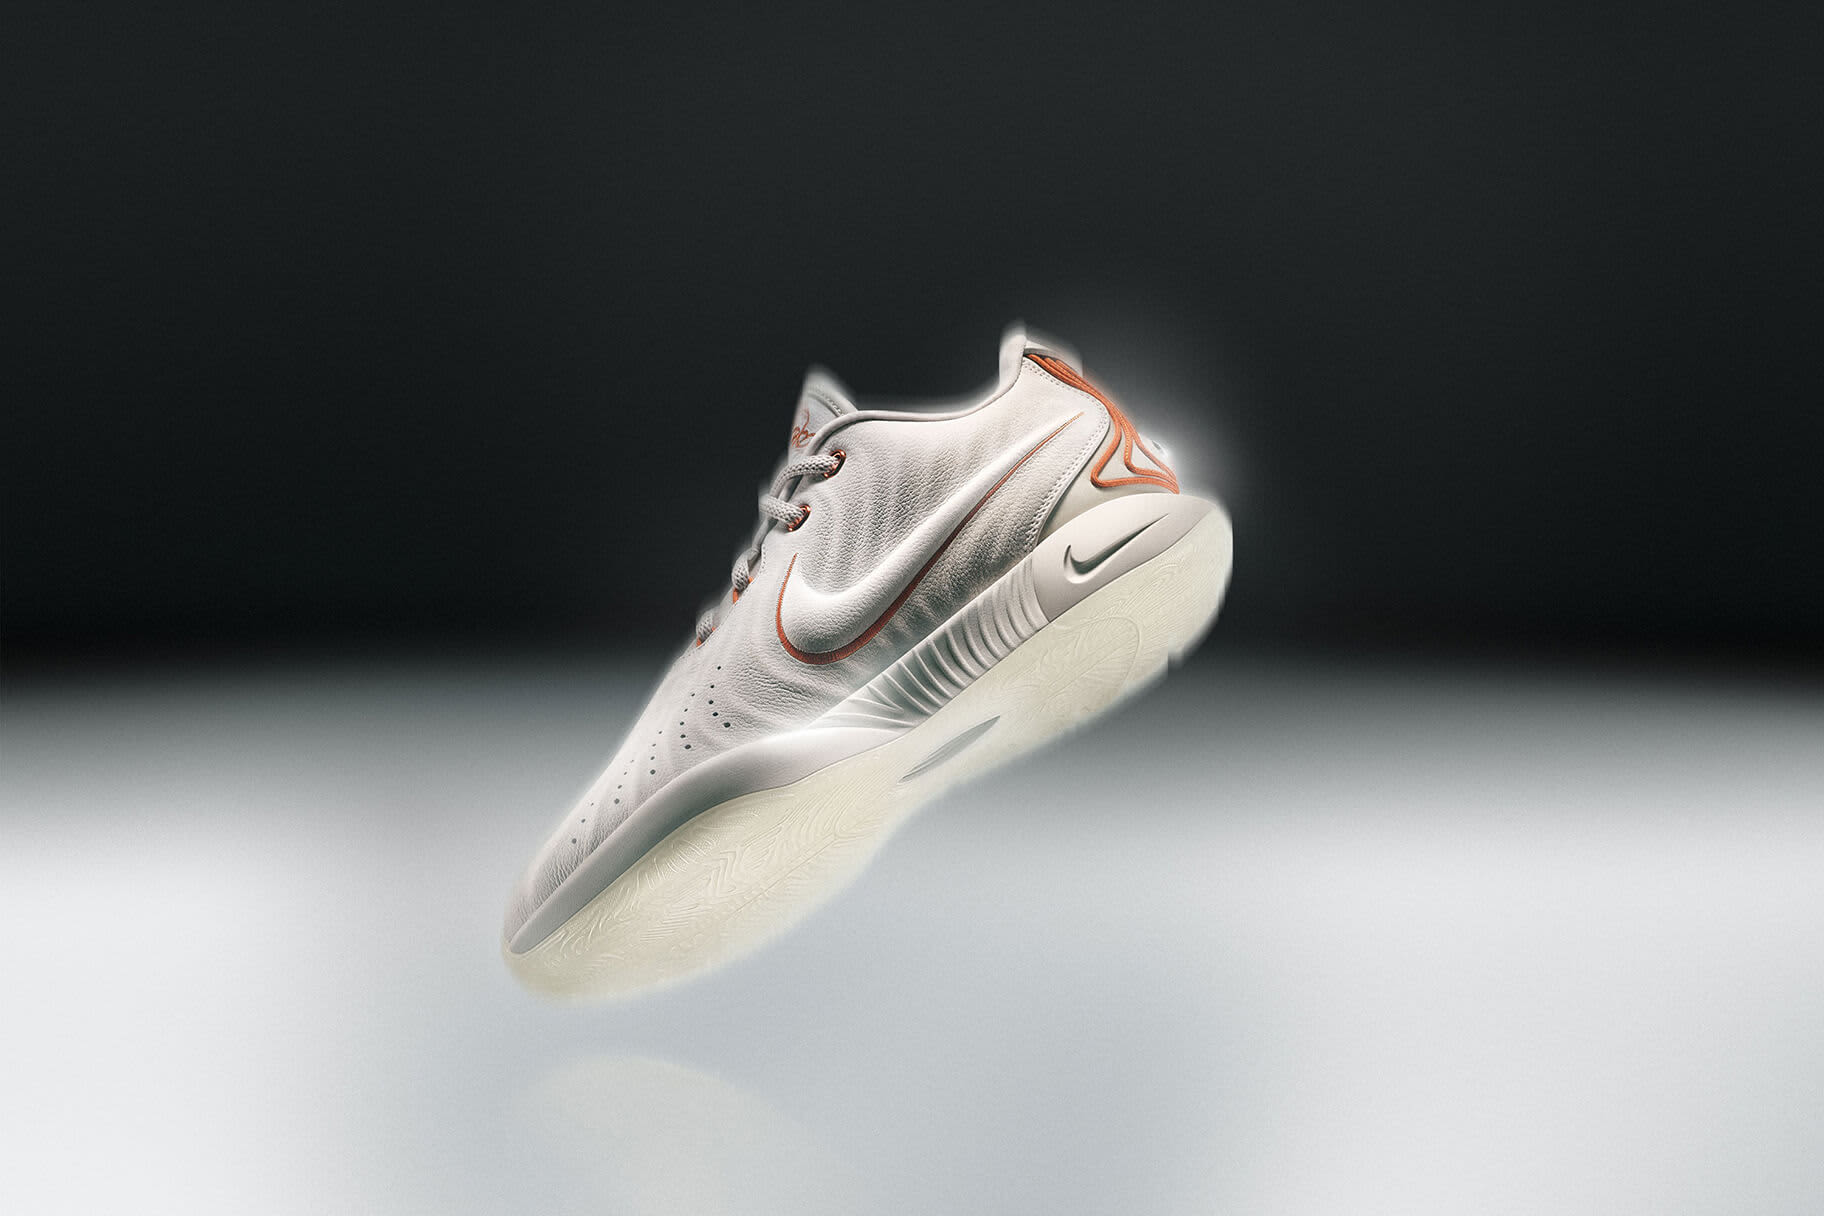 Nike unveils the LeBron XXI